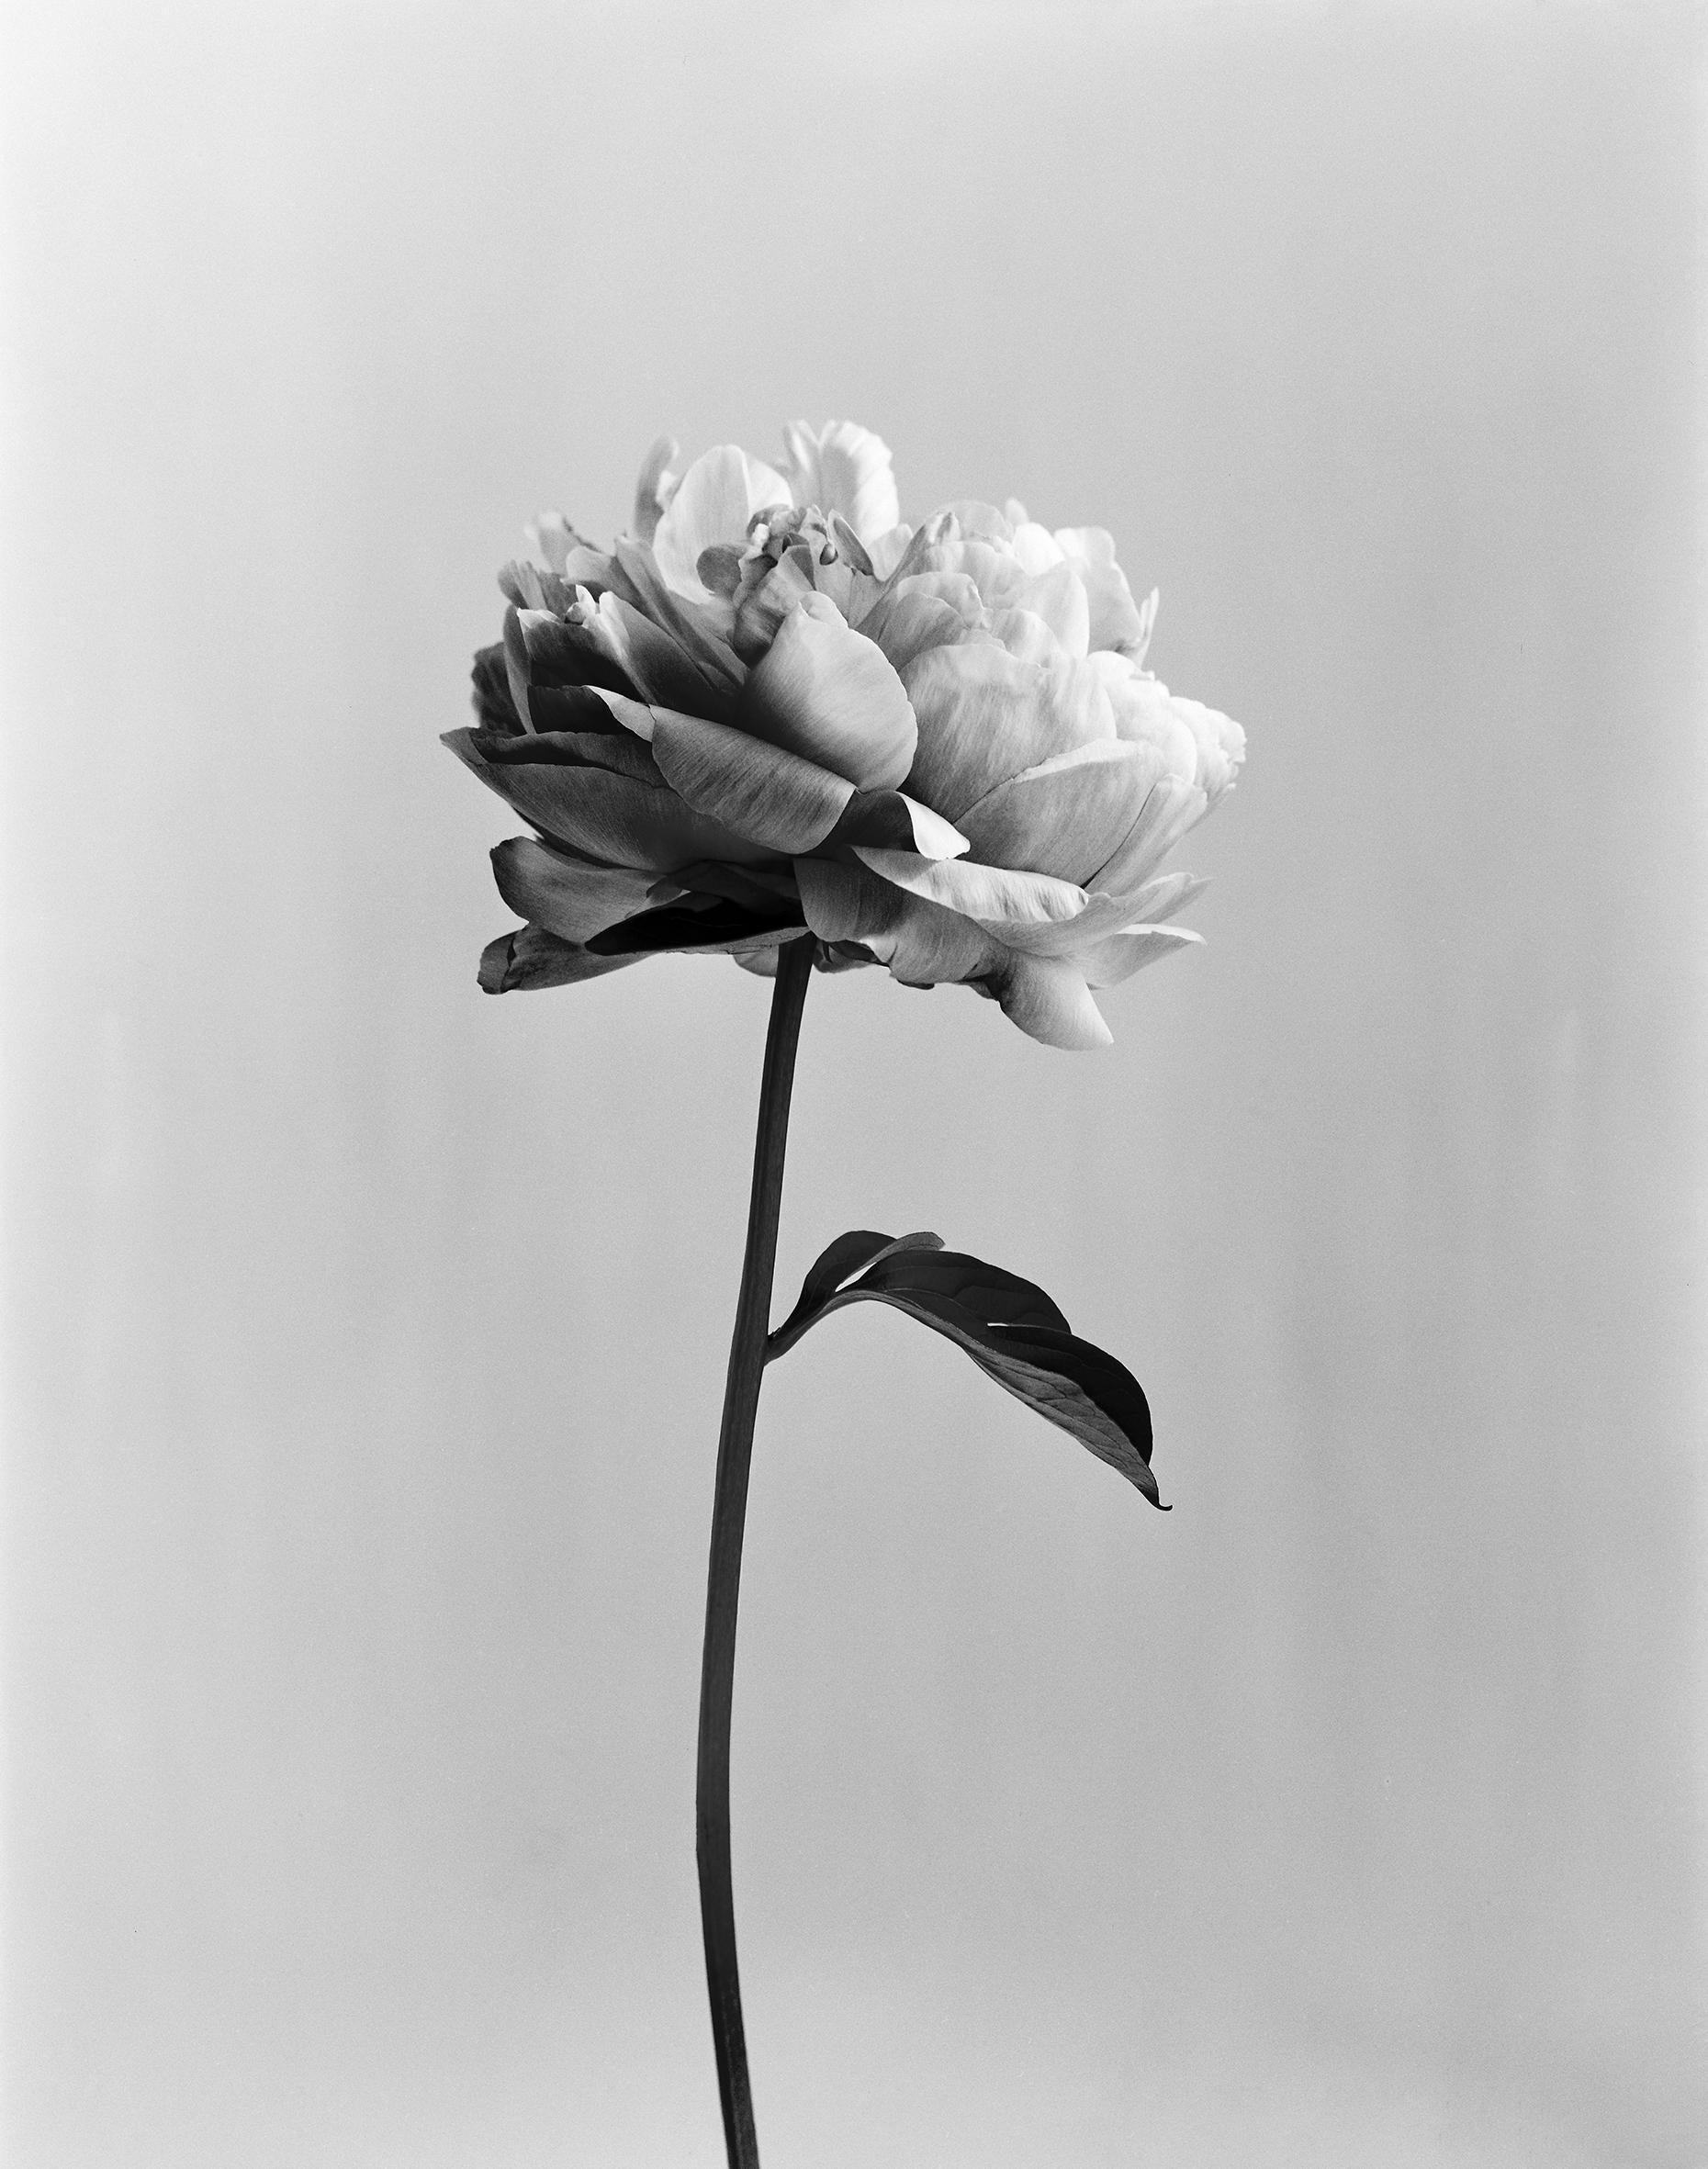 Black and White Photograph Ugne Pouwell - Pivoine n°3 - photographie florale analogique en noir et blanc, édition limitée à 20 exemplaires